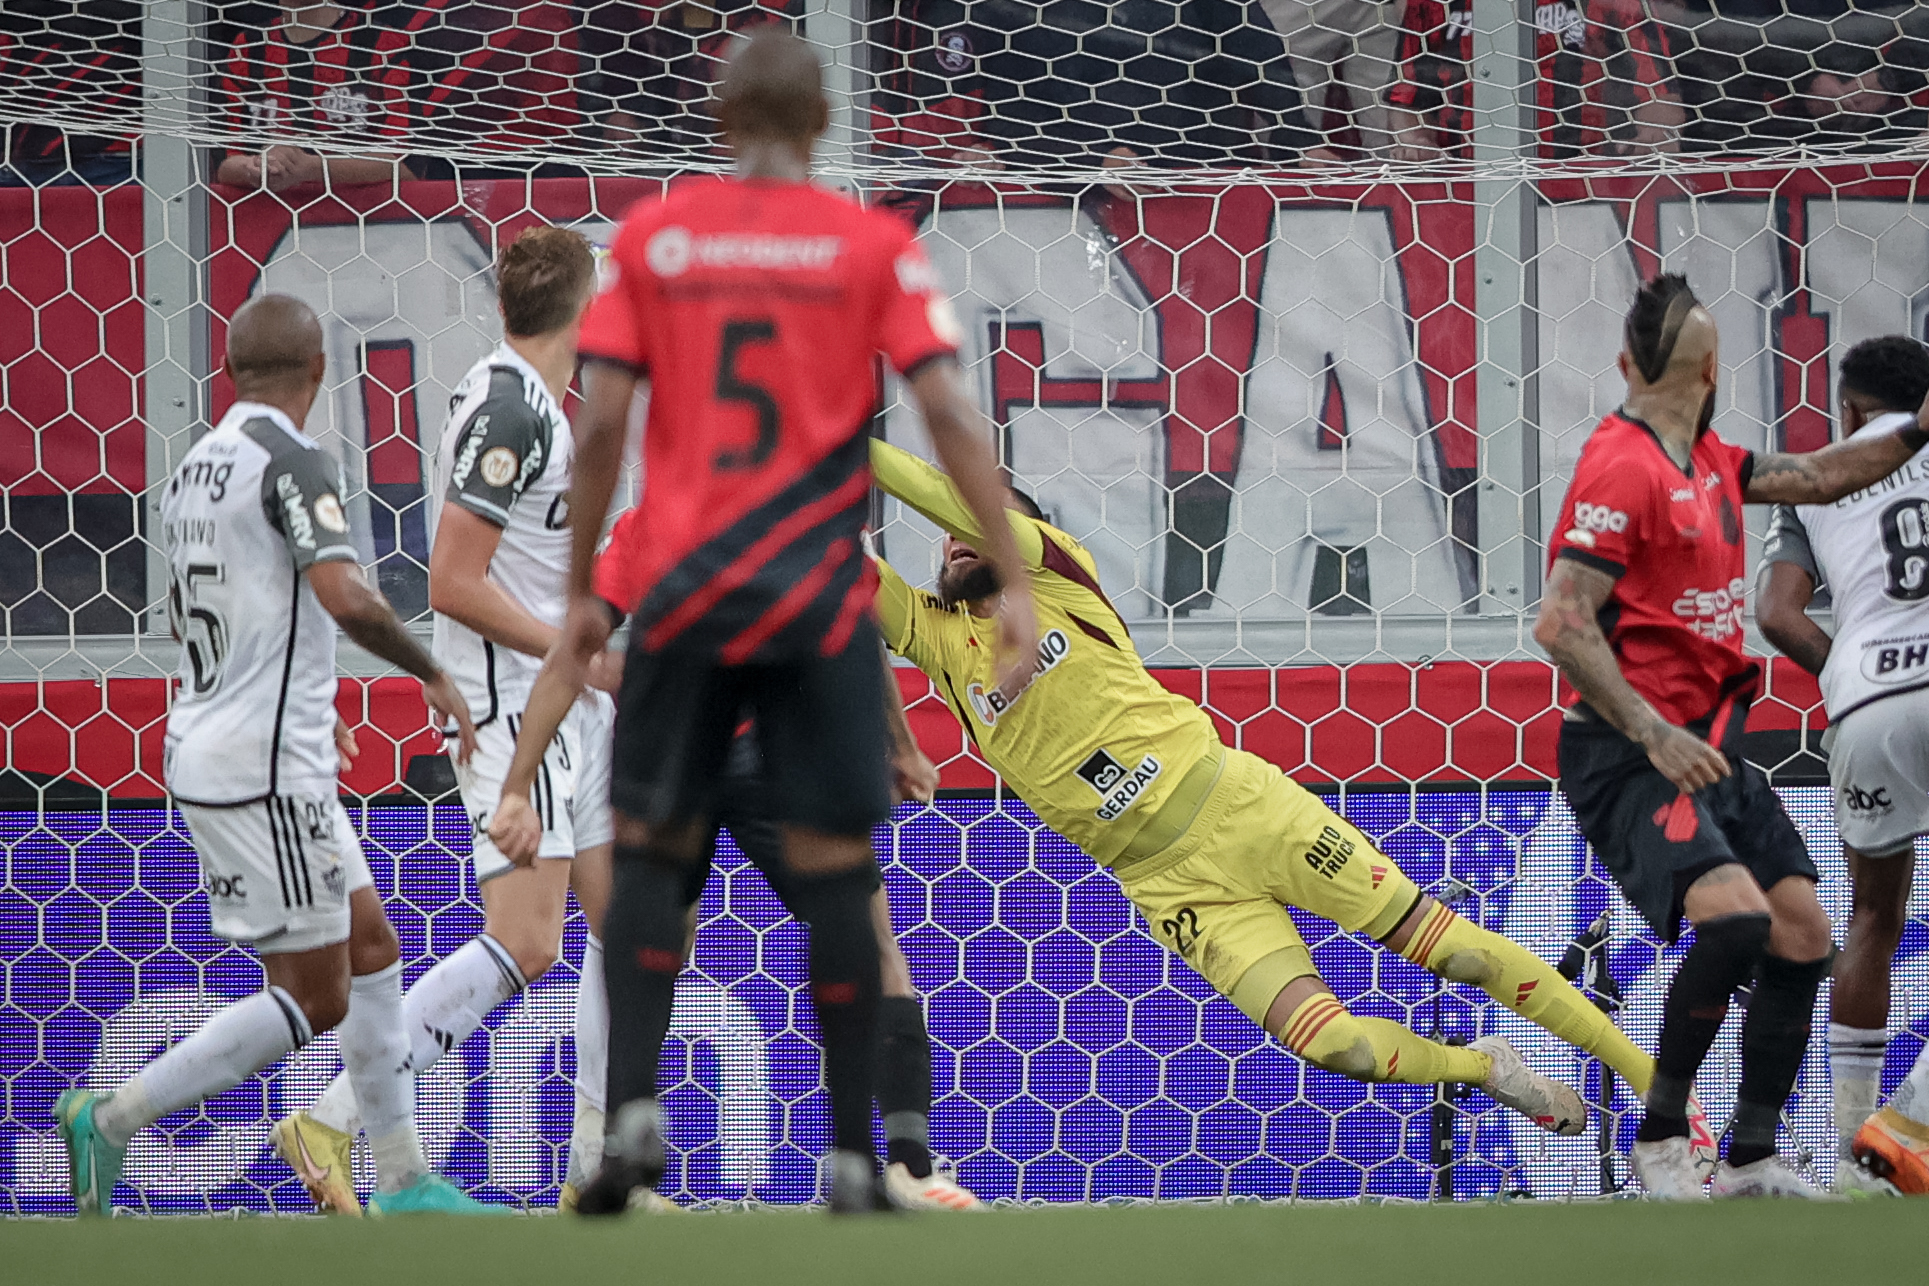 Everson fez ótimas defesas ao longo do jogo (Foto: Pedro Souza / Atlético)